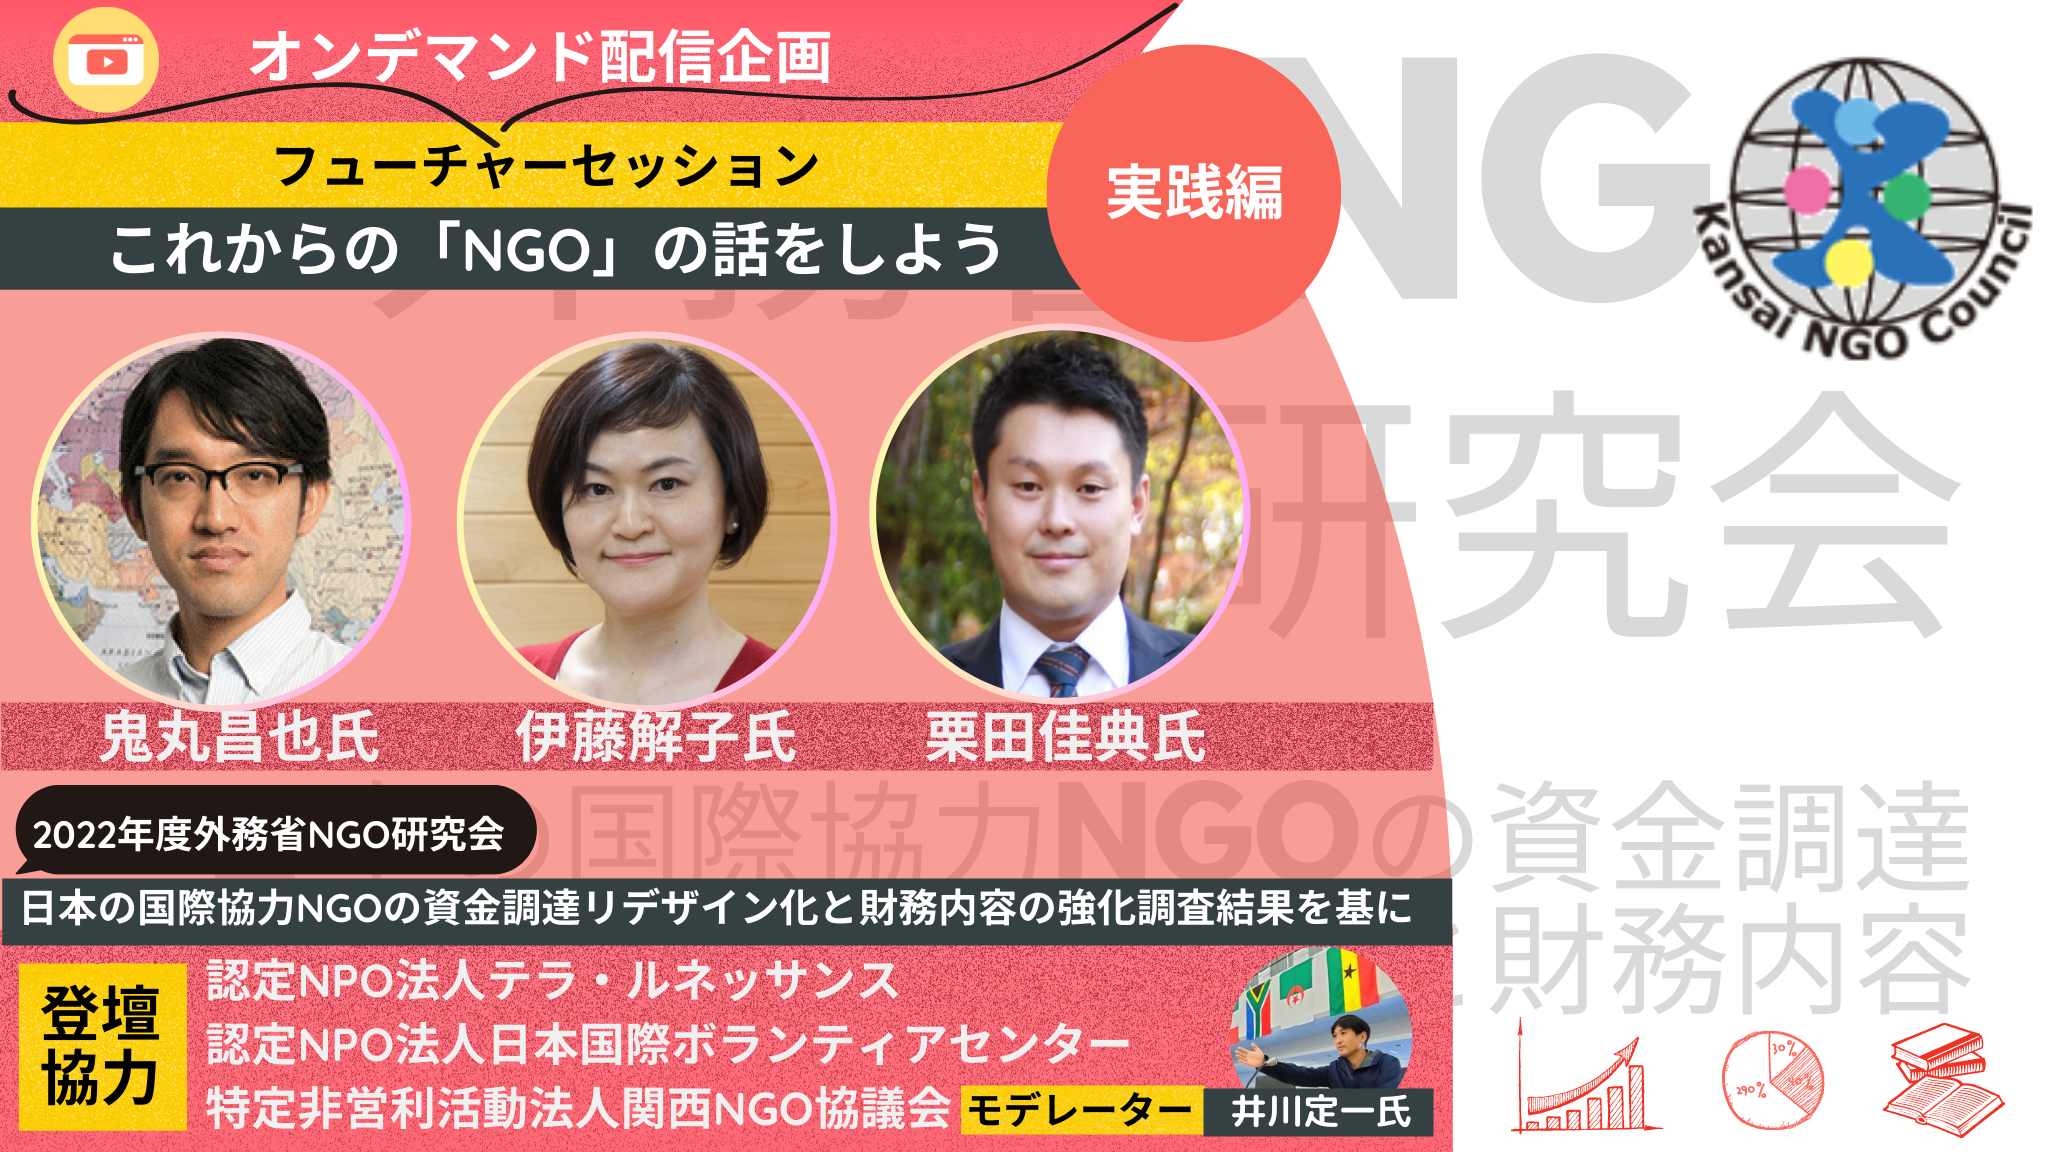 フーチャーセッション「これからの『NGO』の話をしよう」外務省NGO研究会「日本の国際協力NGOの資金調達リデザイン化と財務内容の強化」